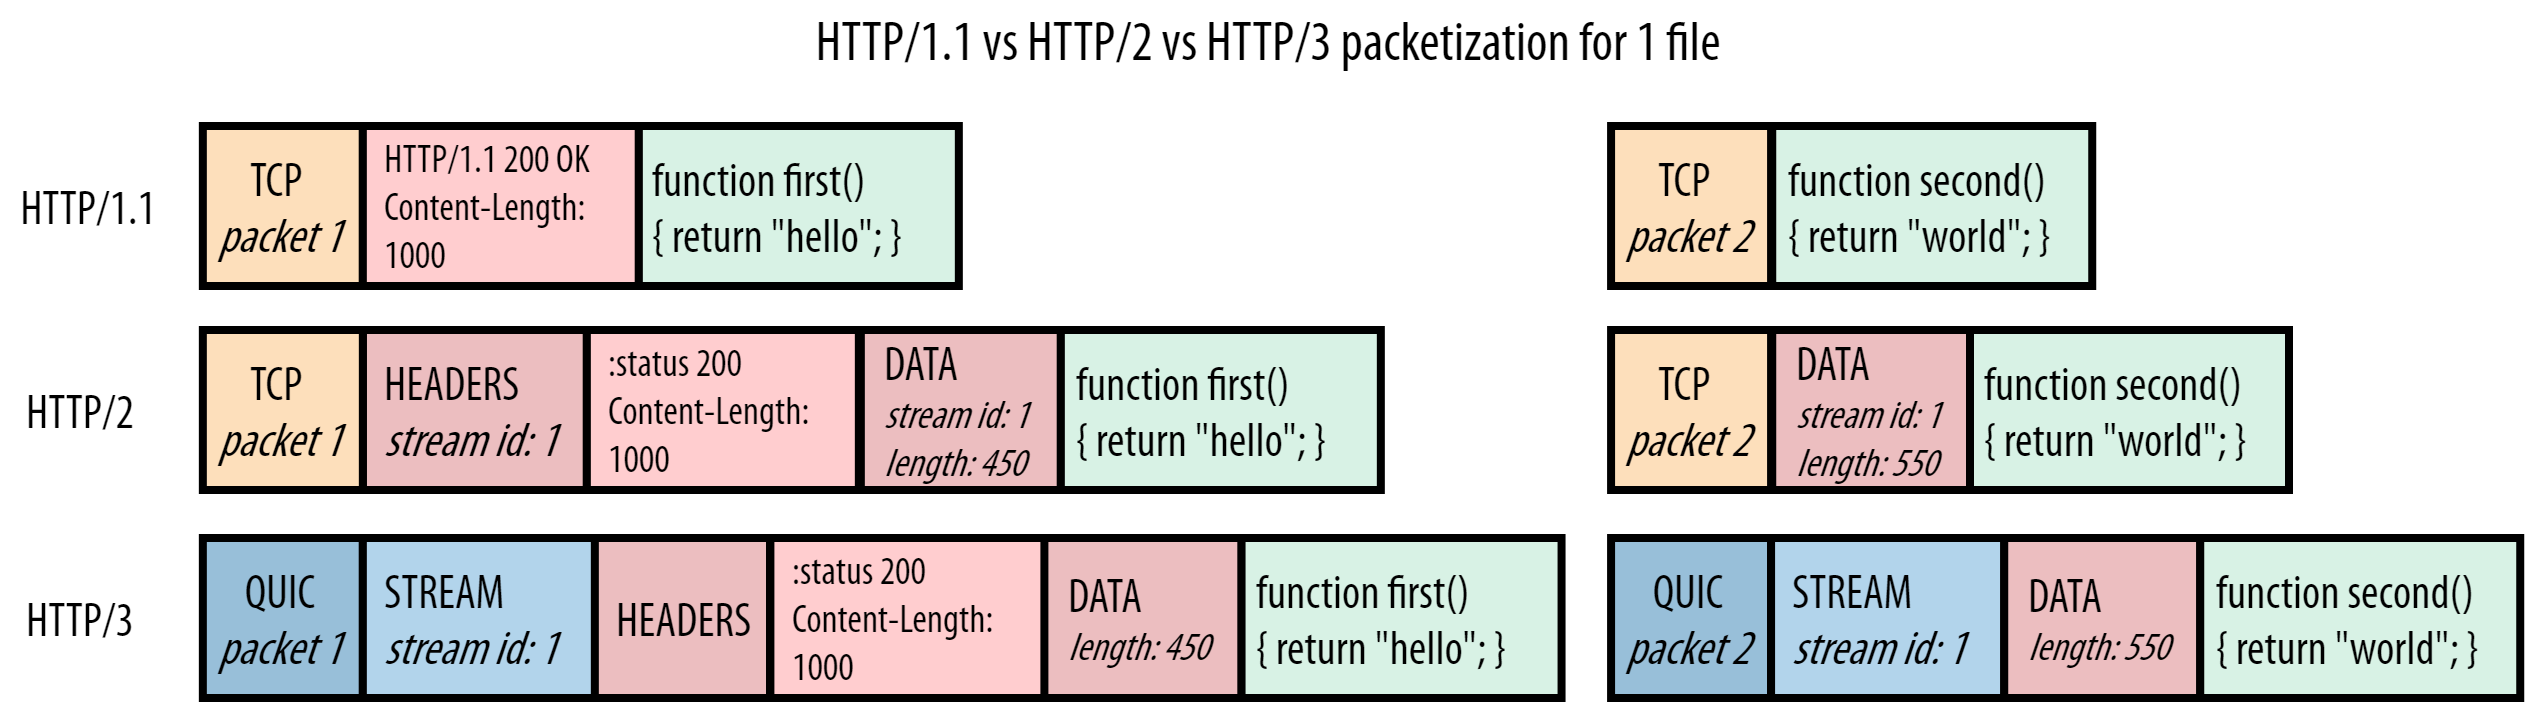 server HTTP/1.1 vs HTTP/2 vs HTTP/3 response for script.js